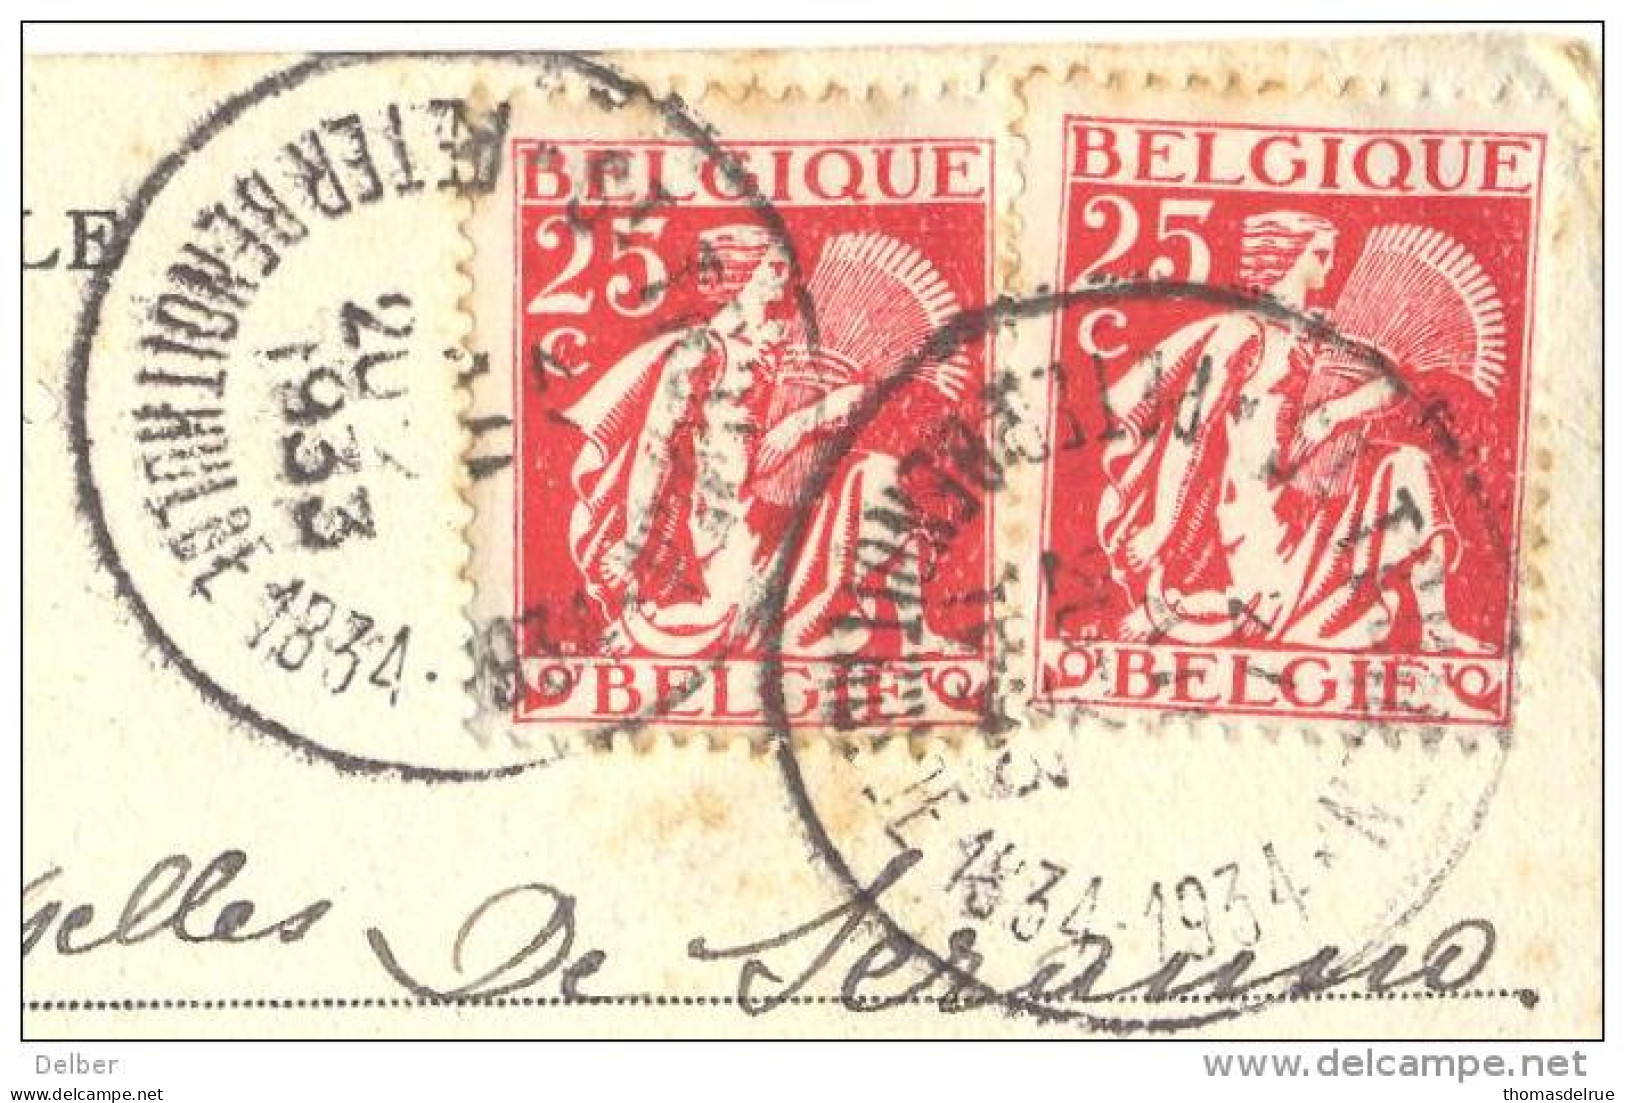 _ik174: N° 339+339::ST-TRUIDEN PETER BENOITHULDE 1834-1934... Op Fantasie Kaartje Met Verknipte Postzegels..HOUYOUX... - 1932 Ceres Y Mercurio